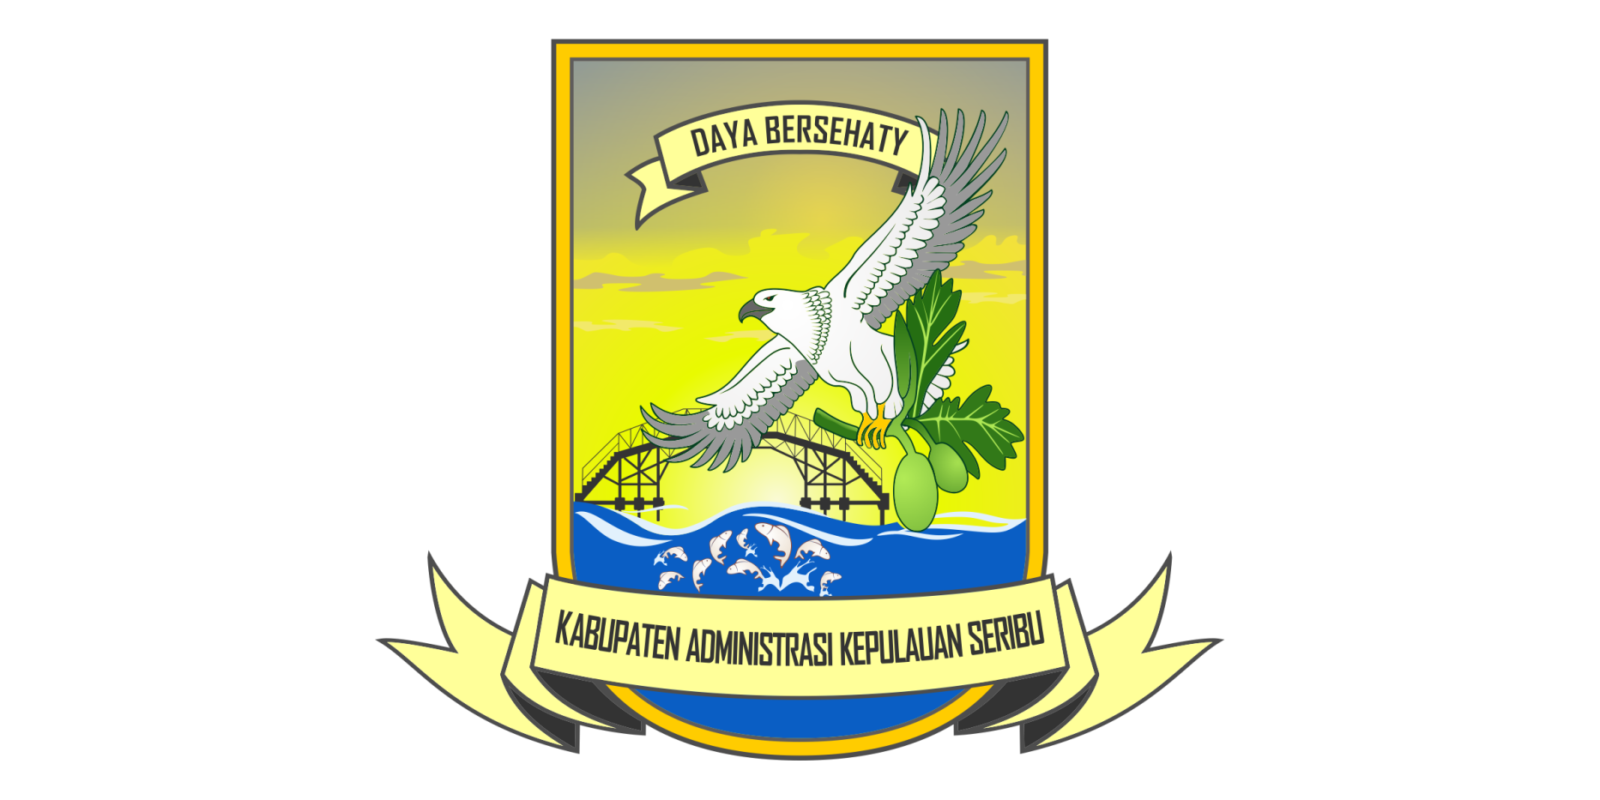 Logo Kabupaten Administrasi Kepulauan Seribu